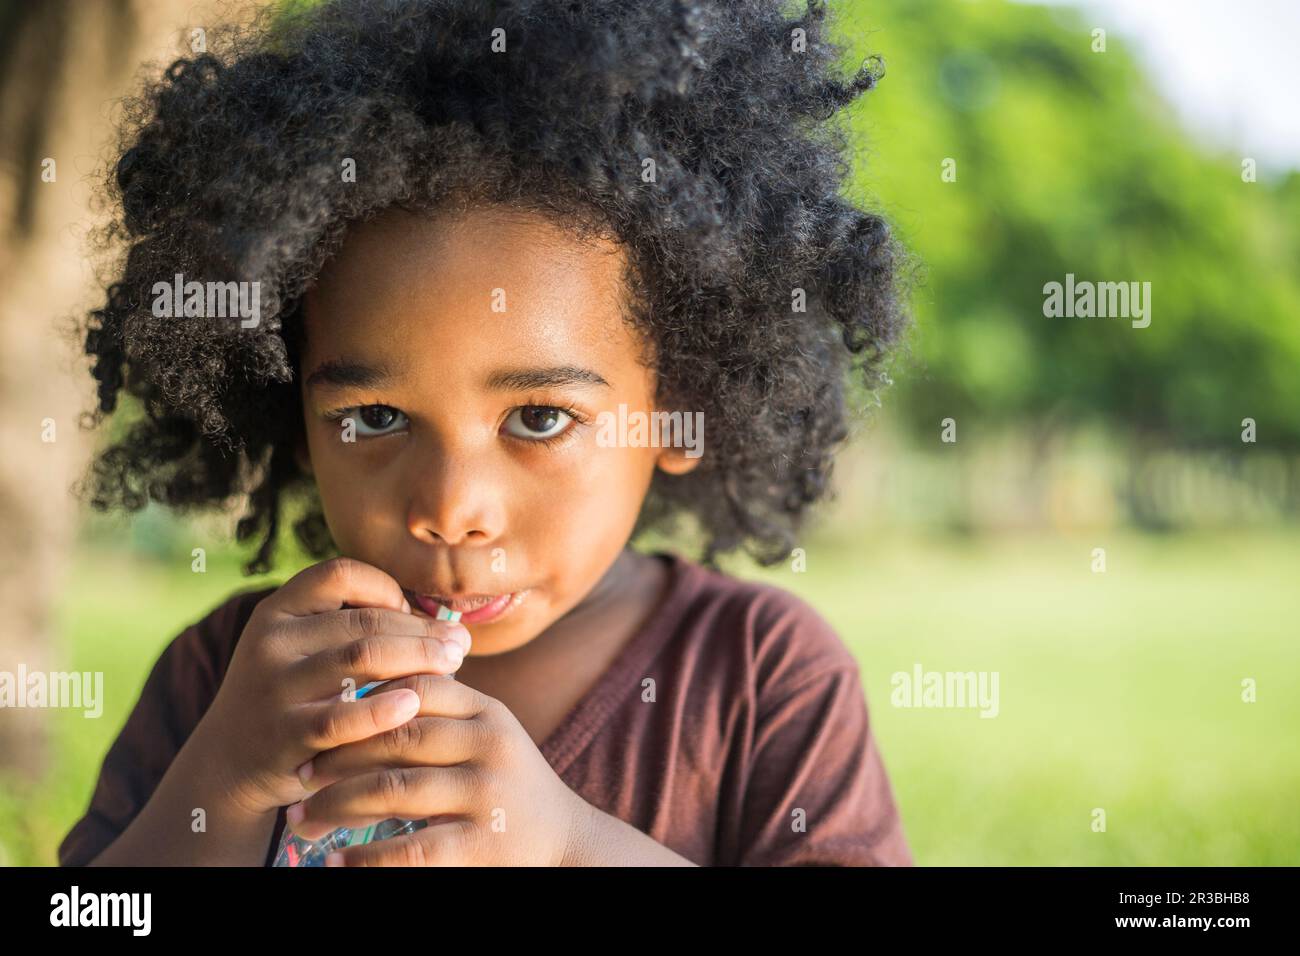 Ein Junge mit lockigem Haar, der im Park durch Stroh trinkt Stockfoto